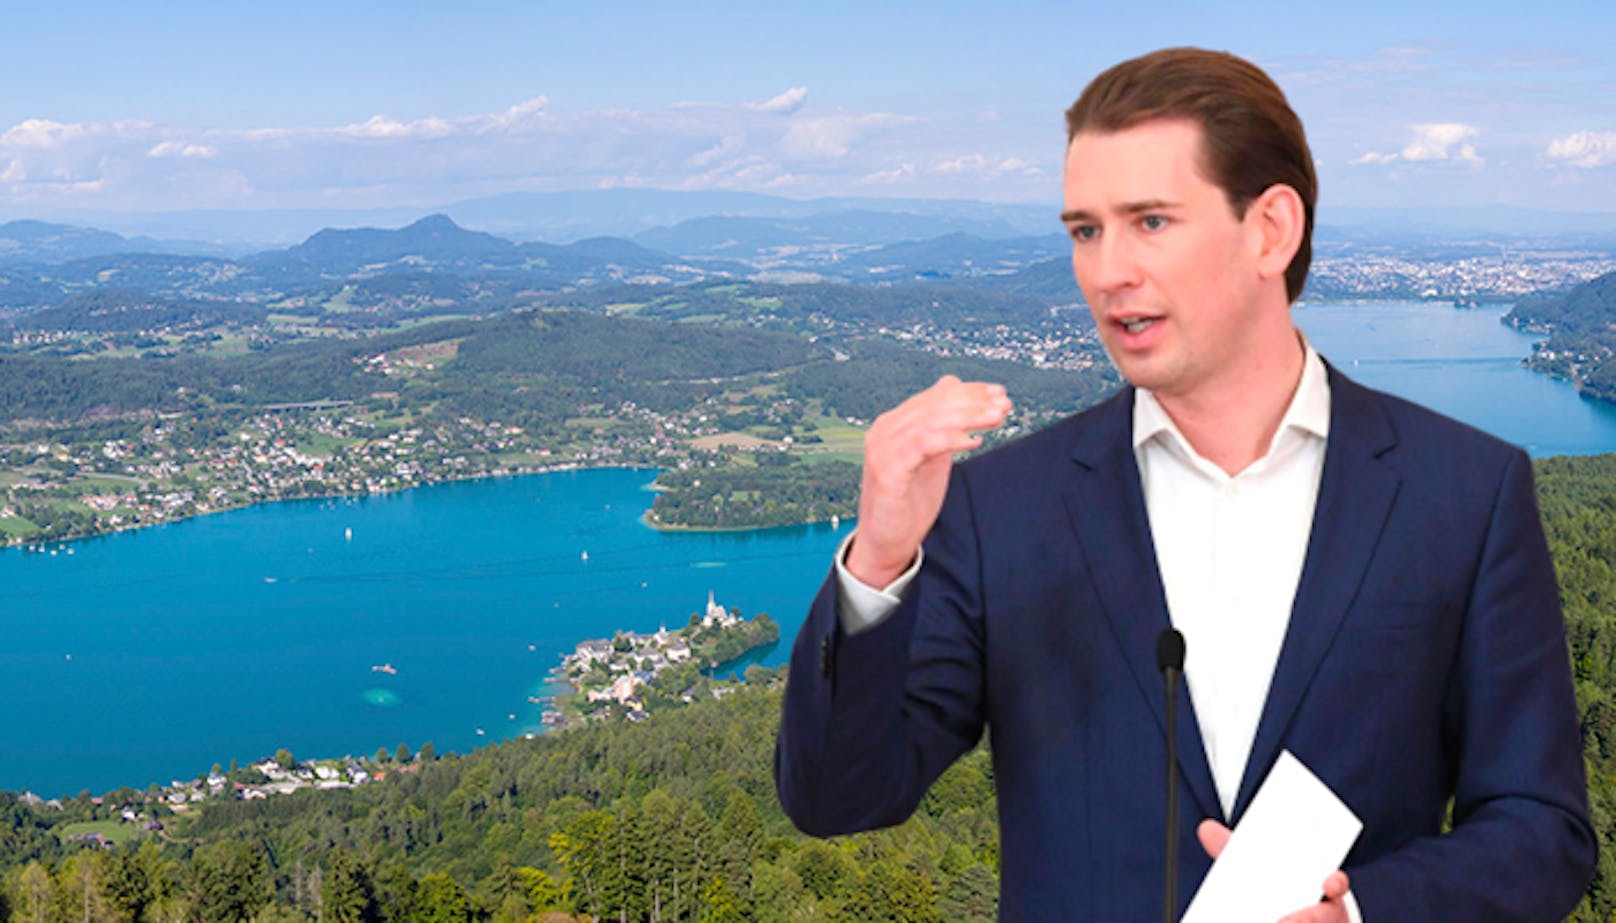 Urlaub in Österreich "so sicher wie nirgendwo", sagt Kurz